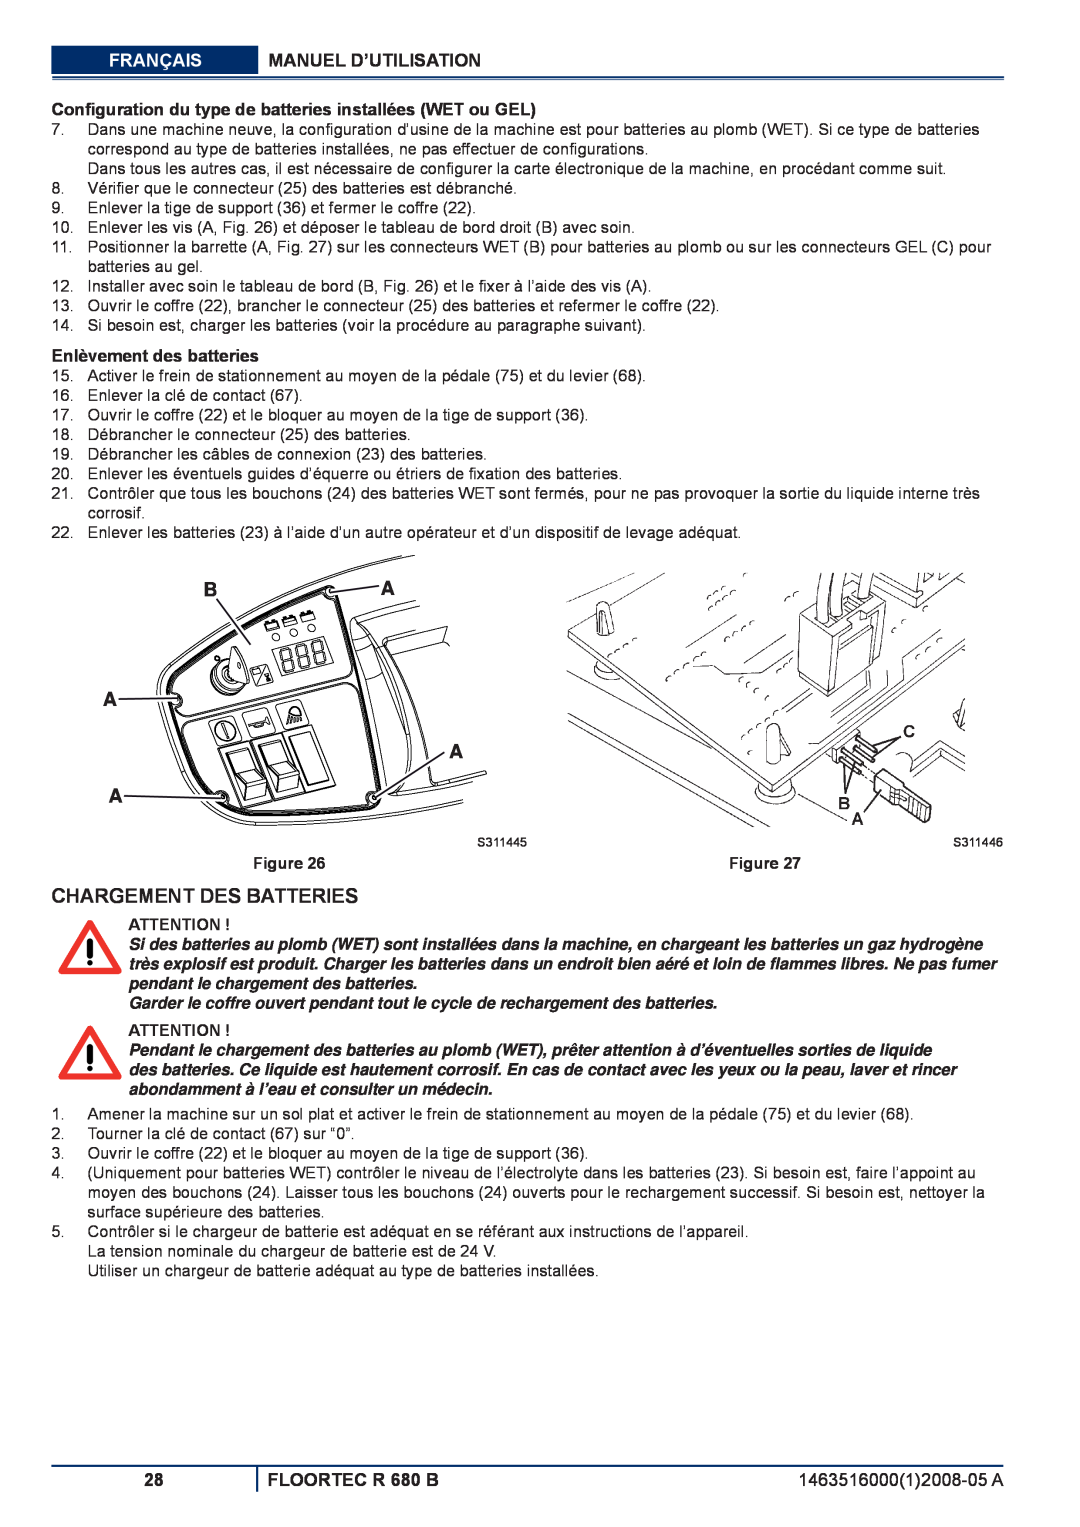 Nilfisk-ALTO R 680 B Chargement Des Batteries, Enlèvement des batteries, B A A A A, Français, Manuel D’Utilisation, Figure 